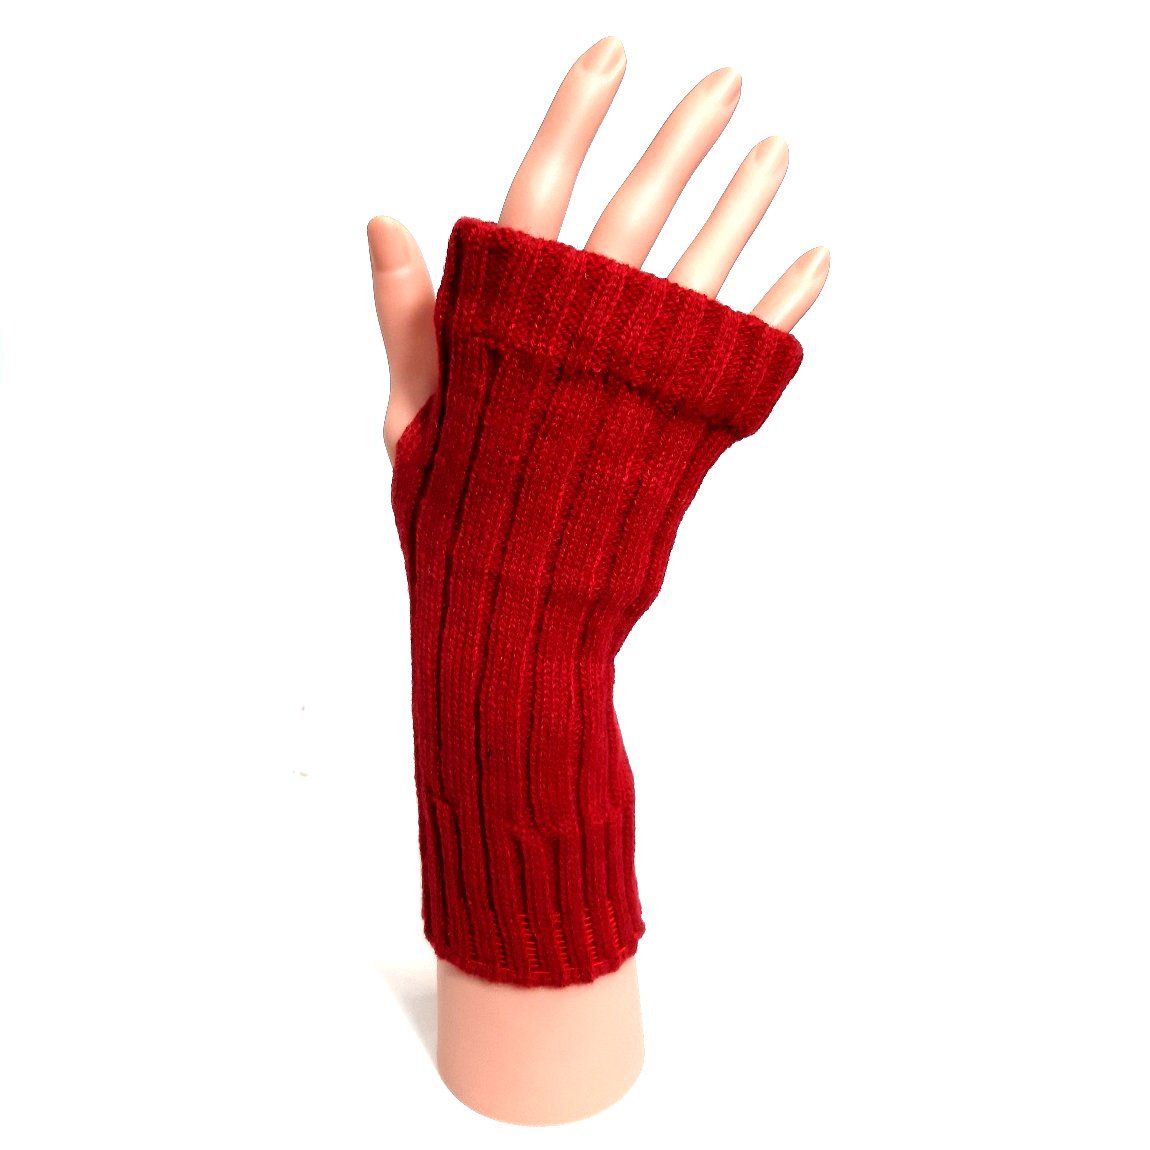 http://totallytoytastic.com/cdn/shop/products/W22211_Knitted_Long_Gloves_Fingerless_Red_1200x1200.jpg?v=1569256205